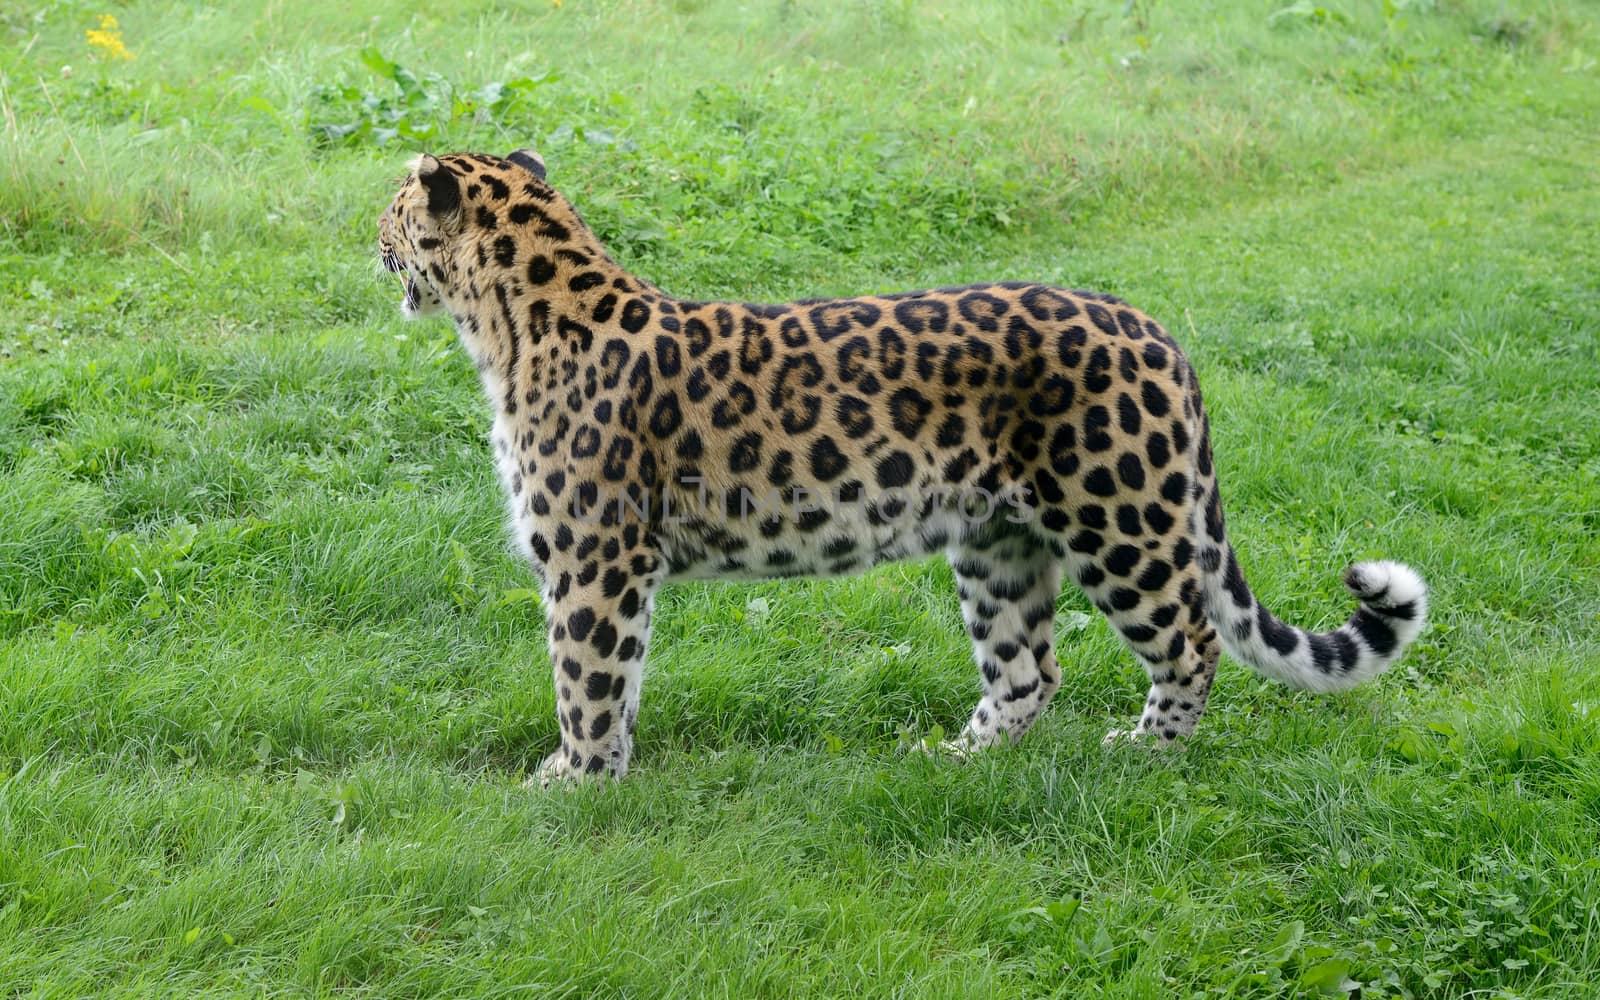 Leopard Spots by kmwphotography